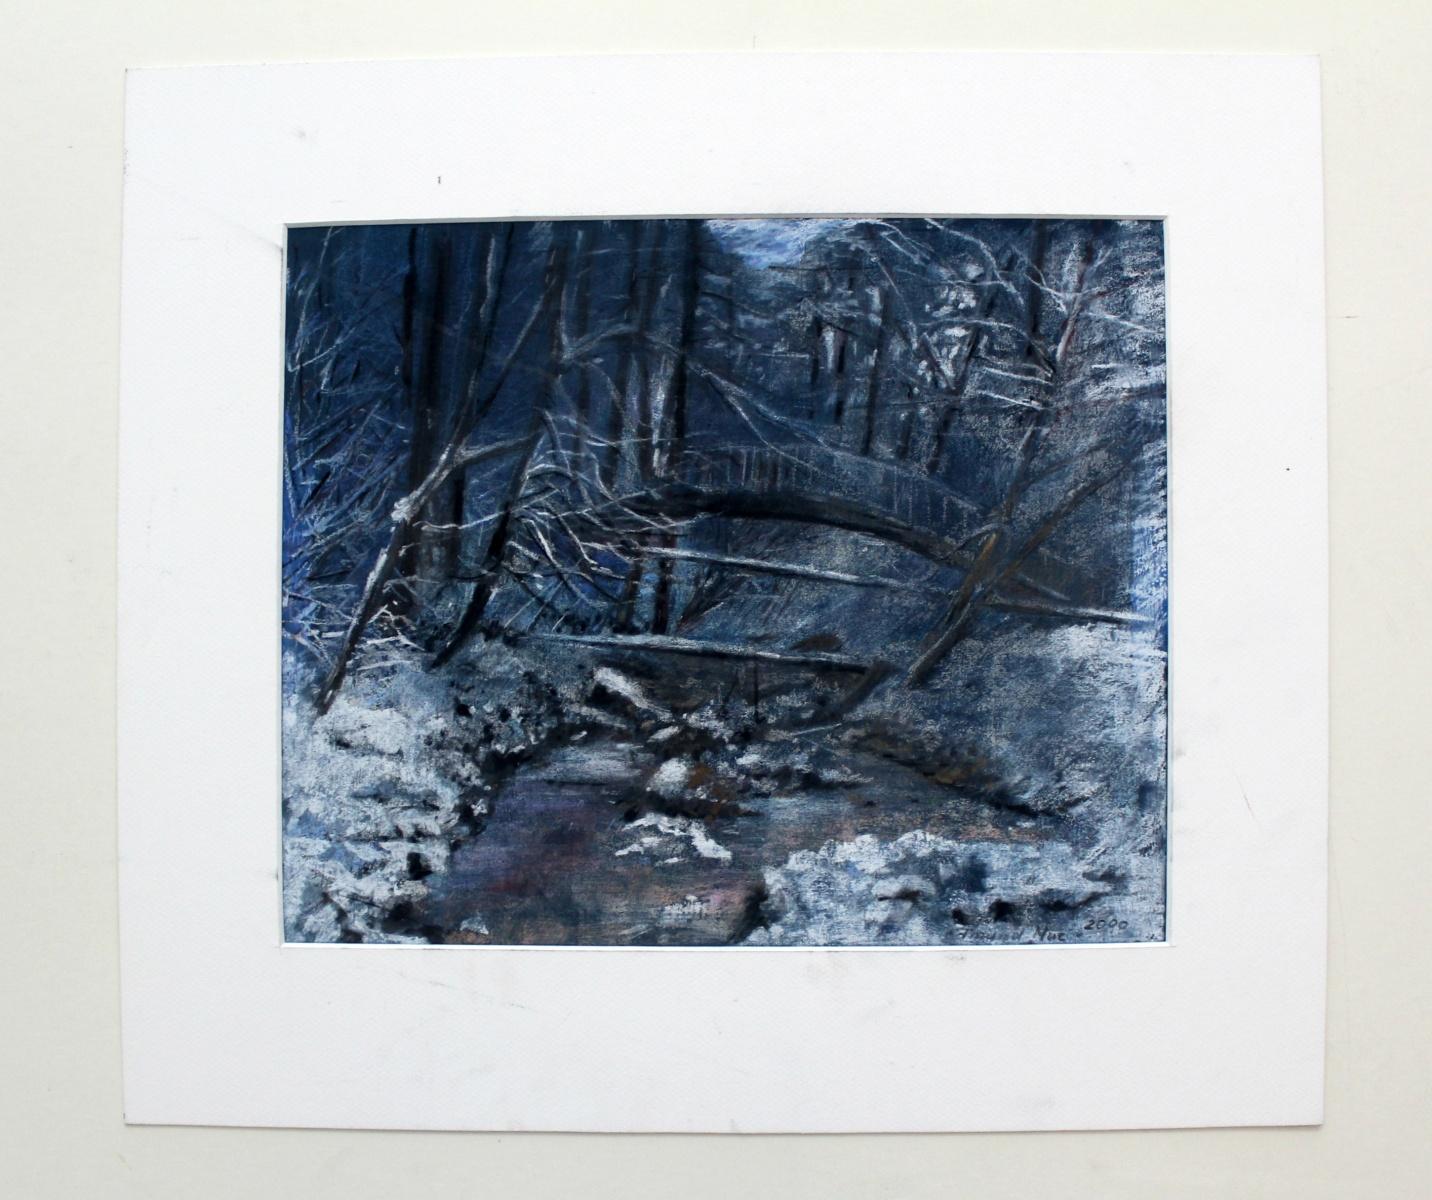 Winter landscape - XX century, Pastel figurative, Blue tones, Realism - Art by Edmund Muc